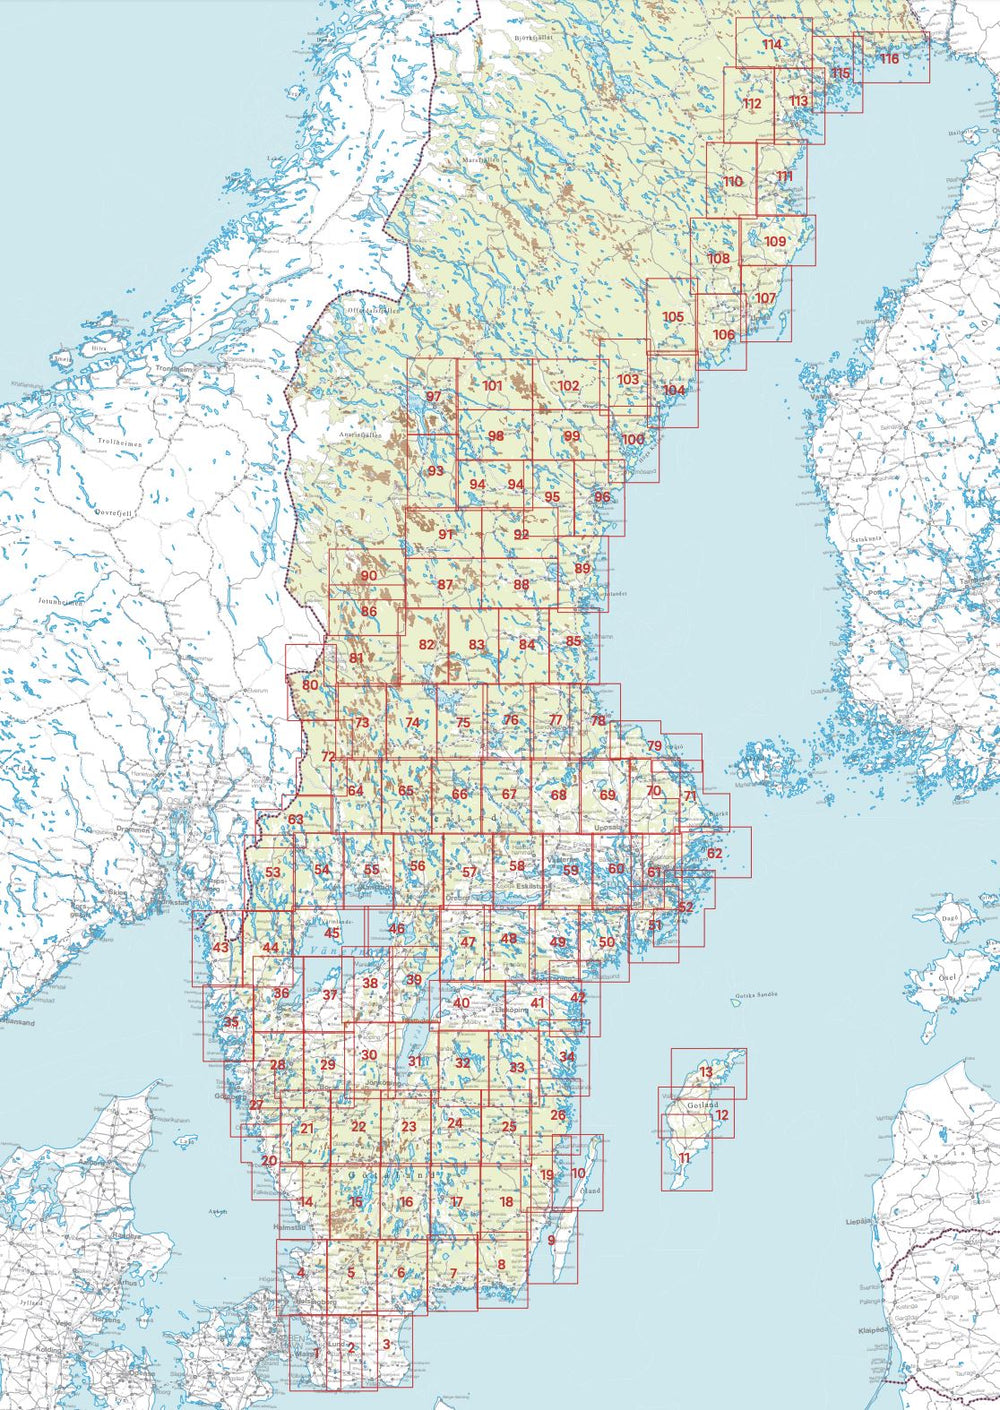 Carte topographique n° 104 - Örnsköldsvik (Suède) | Norstedts - Sverigeserien carte pliée Norstedts 